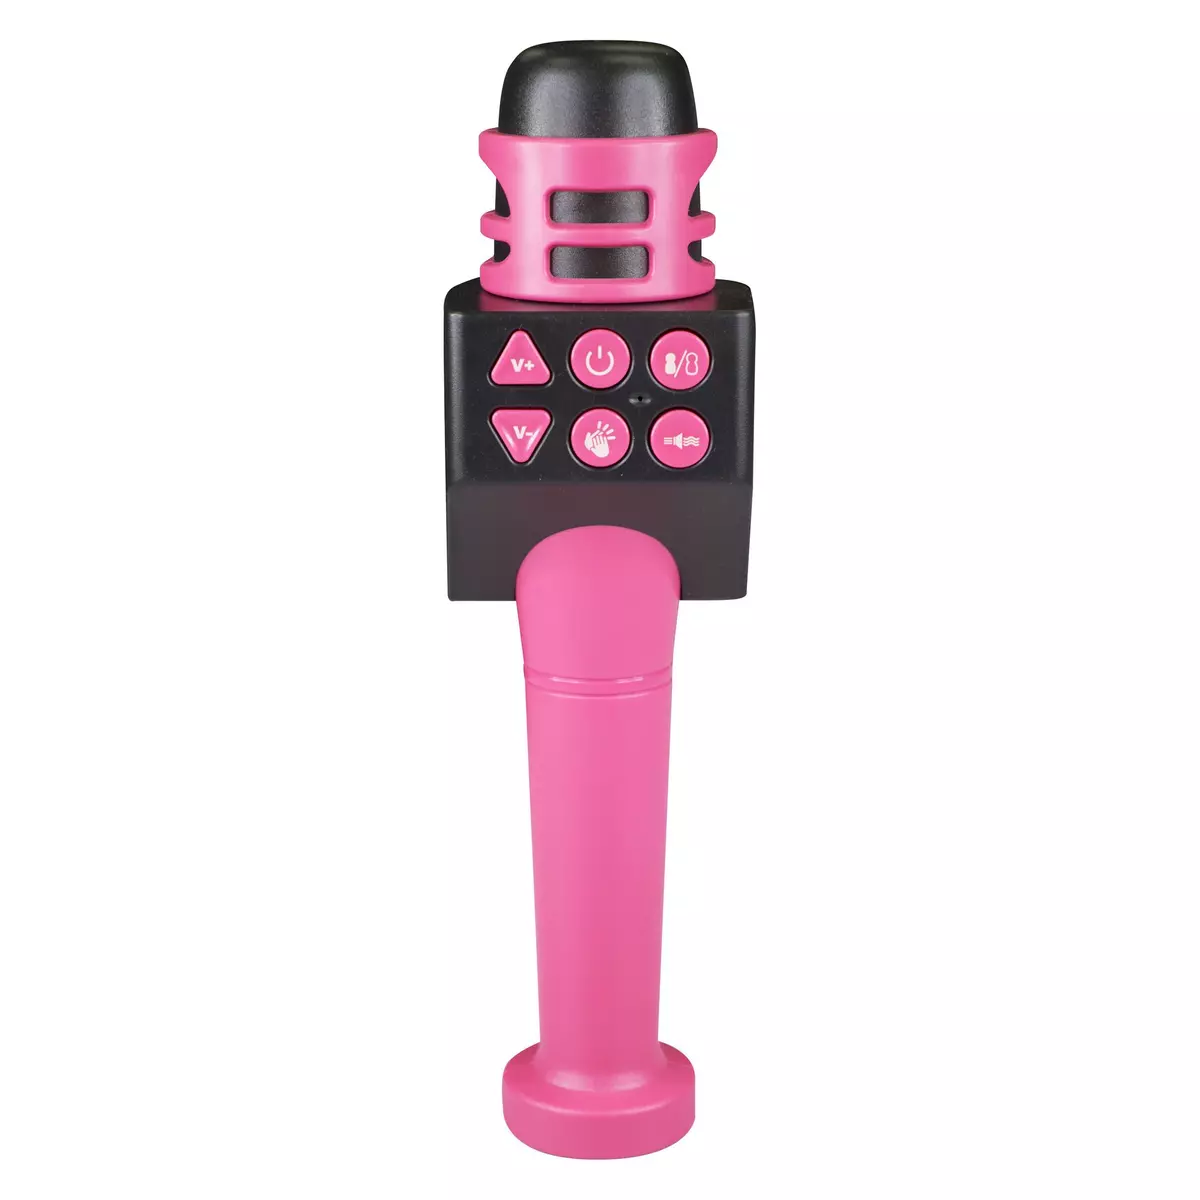 One Two Fun Microphone karaoke rose